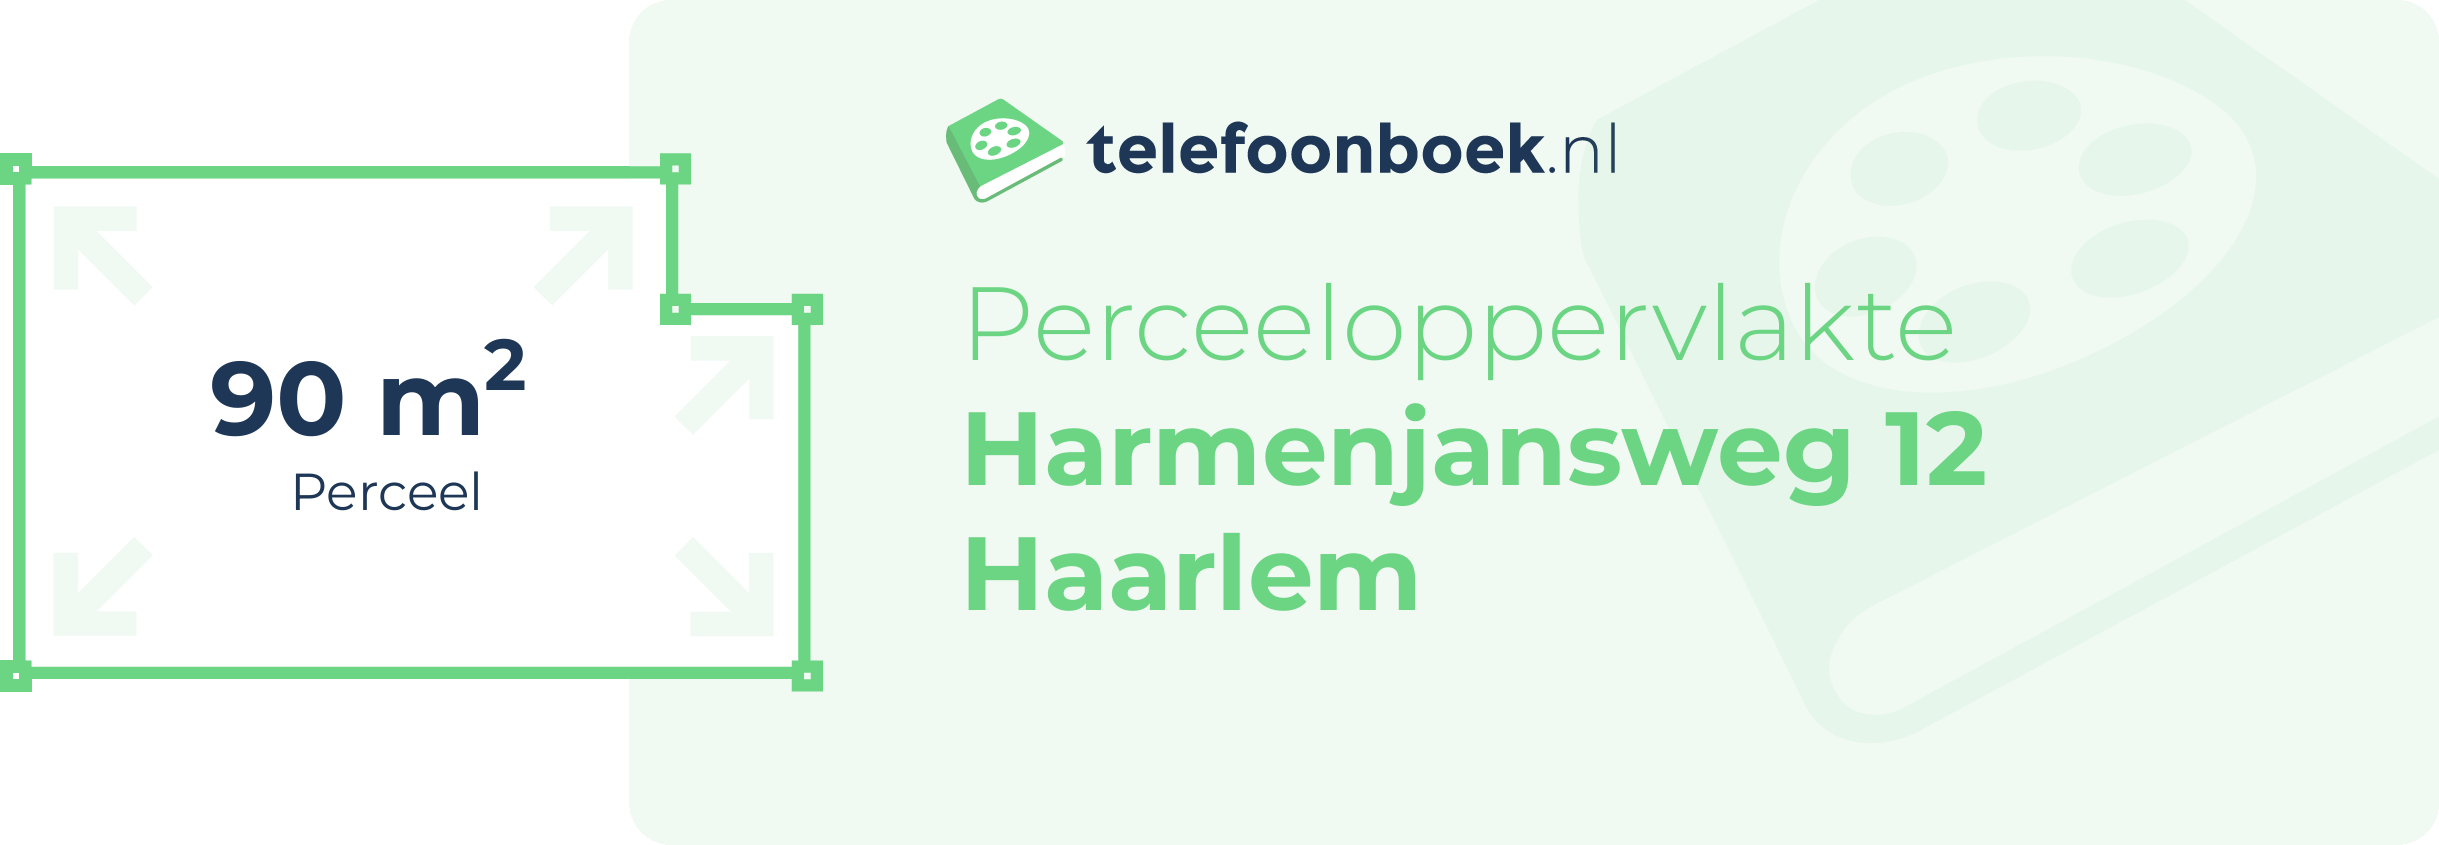 Perceeloppervlakte Harmenjansweg 12 Haarlem